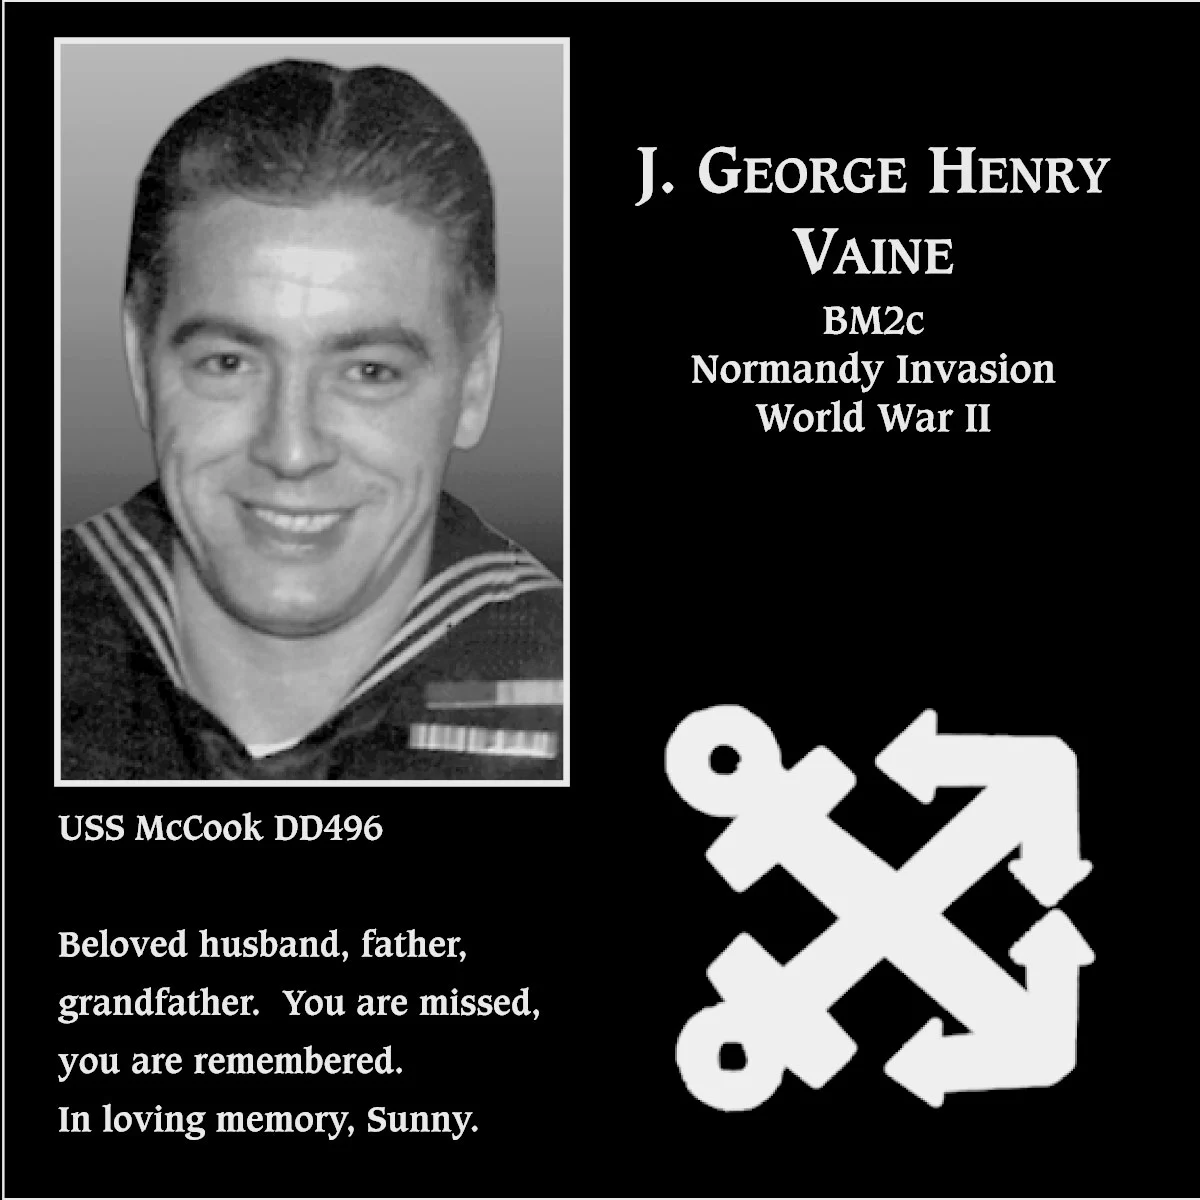 J. George Henry Vaine